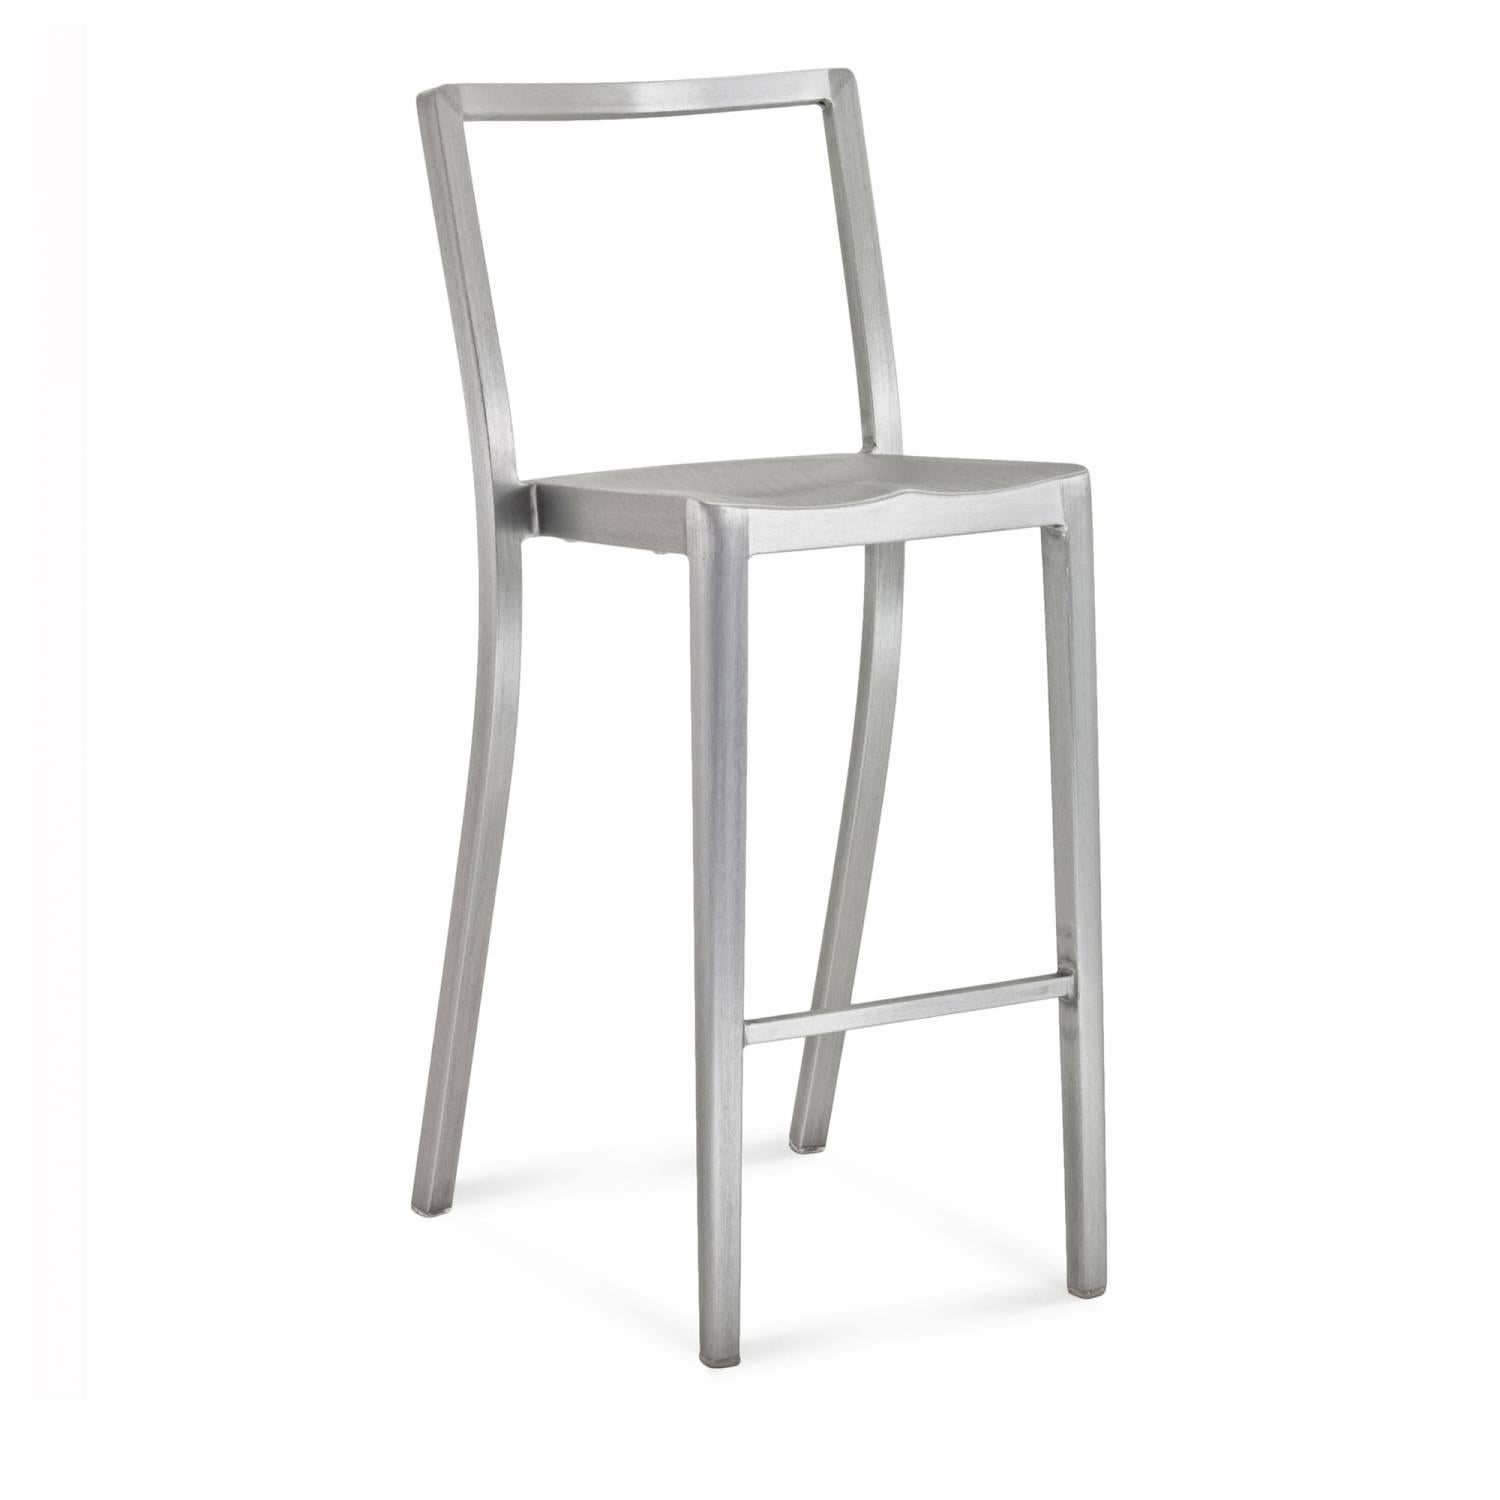 Icon est une chaise empilable cousine de la célèbre chaise Hudson conçue par Starck. Il a été utilisé dans des hôtels, des bars et des restaurants du monde entier, ainsi que dans des centres de formation, des salles de réunion et des écoles. Starck